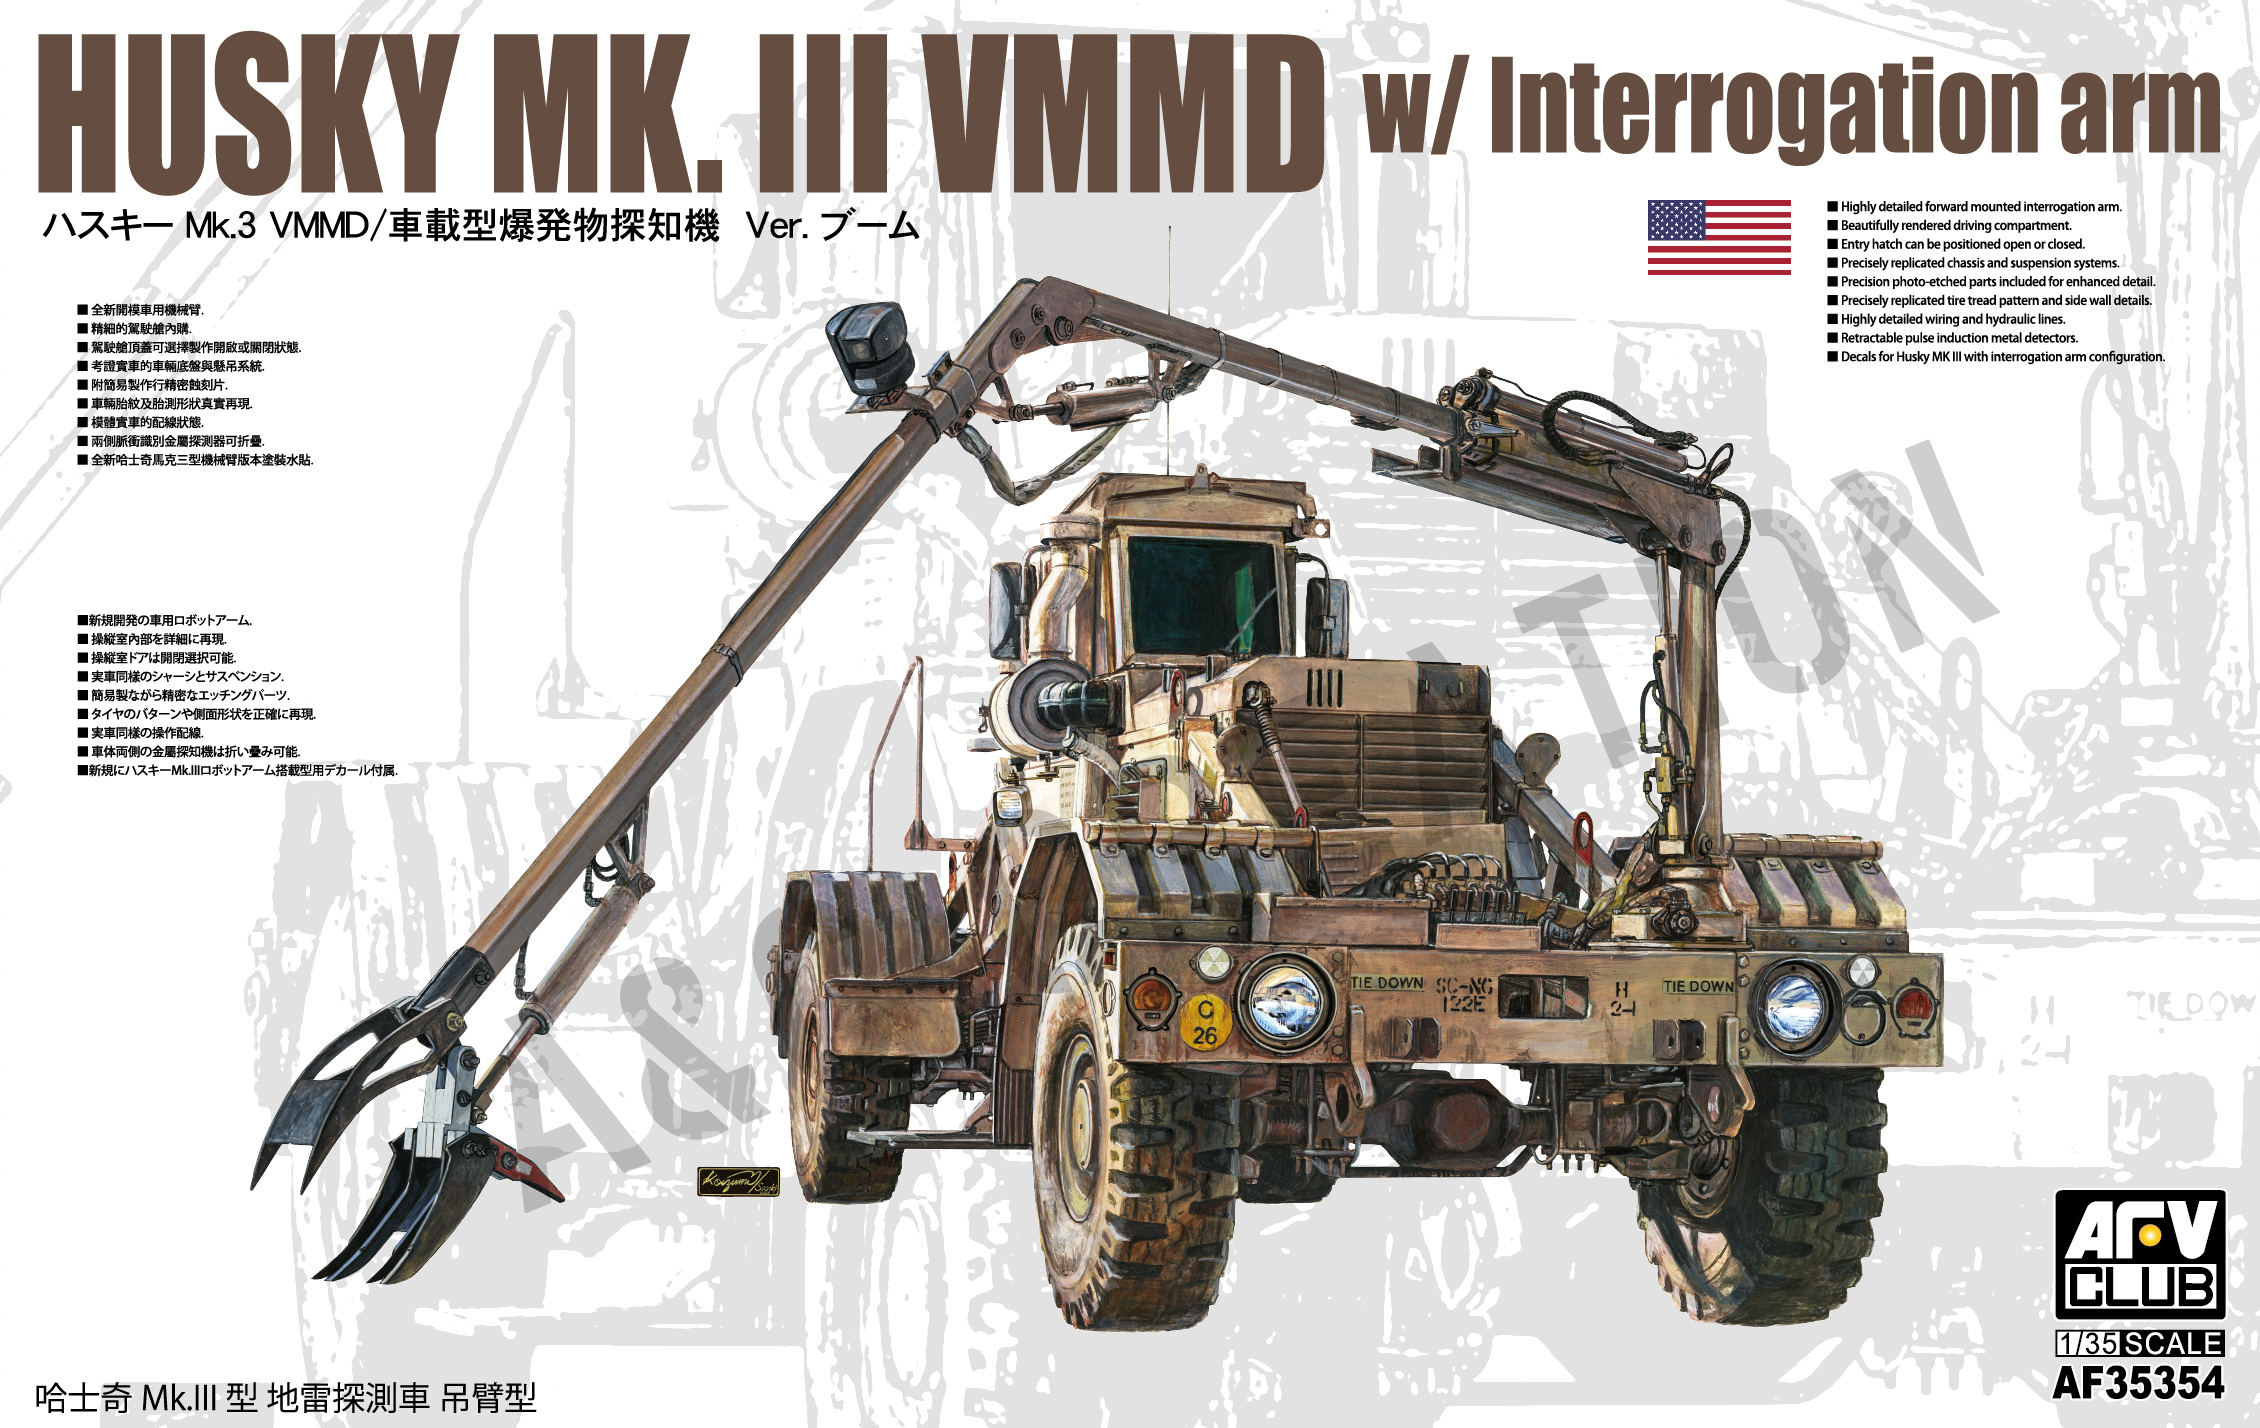 AF35354 Husky Mk. III VMMD w/Interrogation Arm